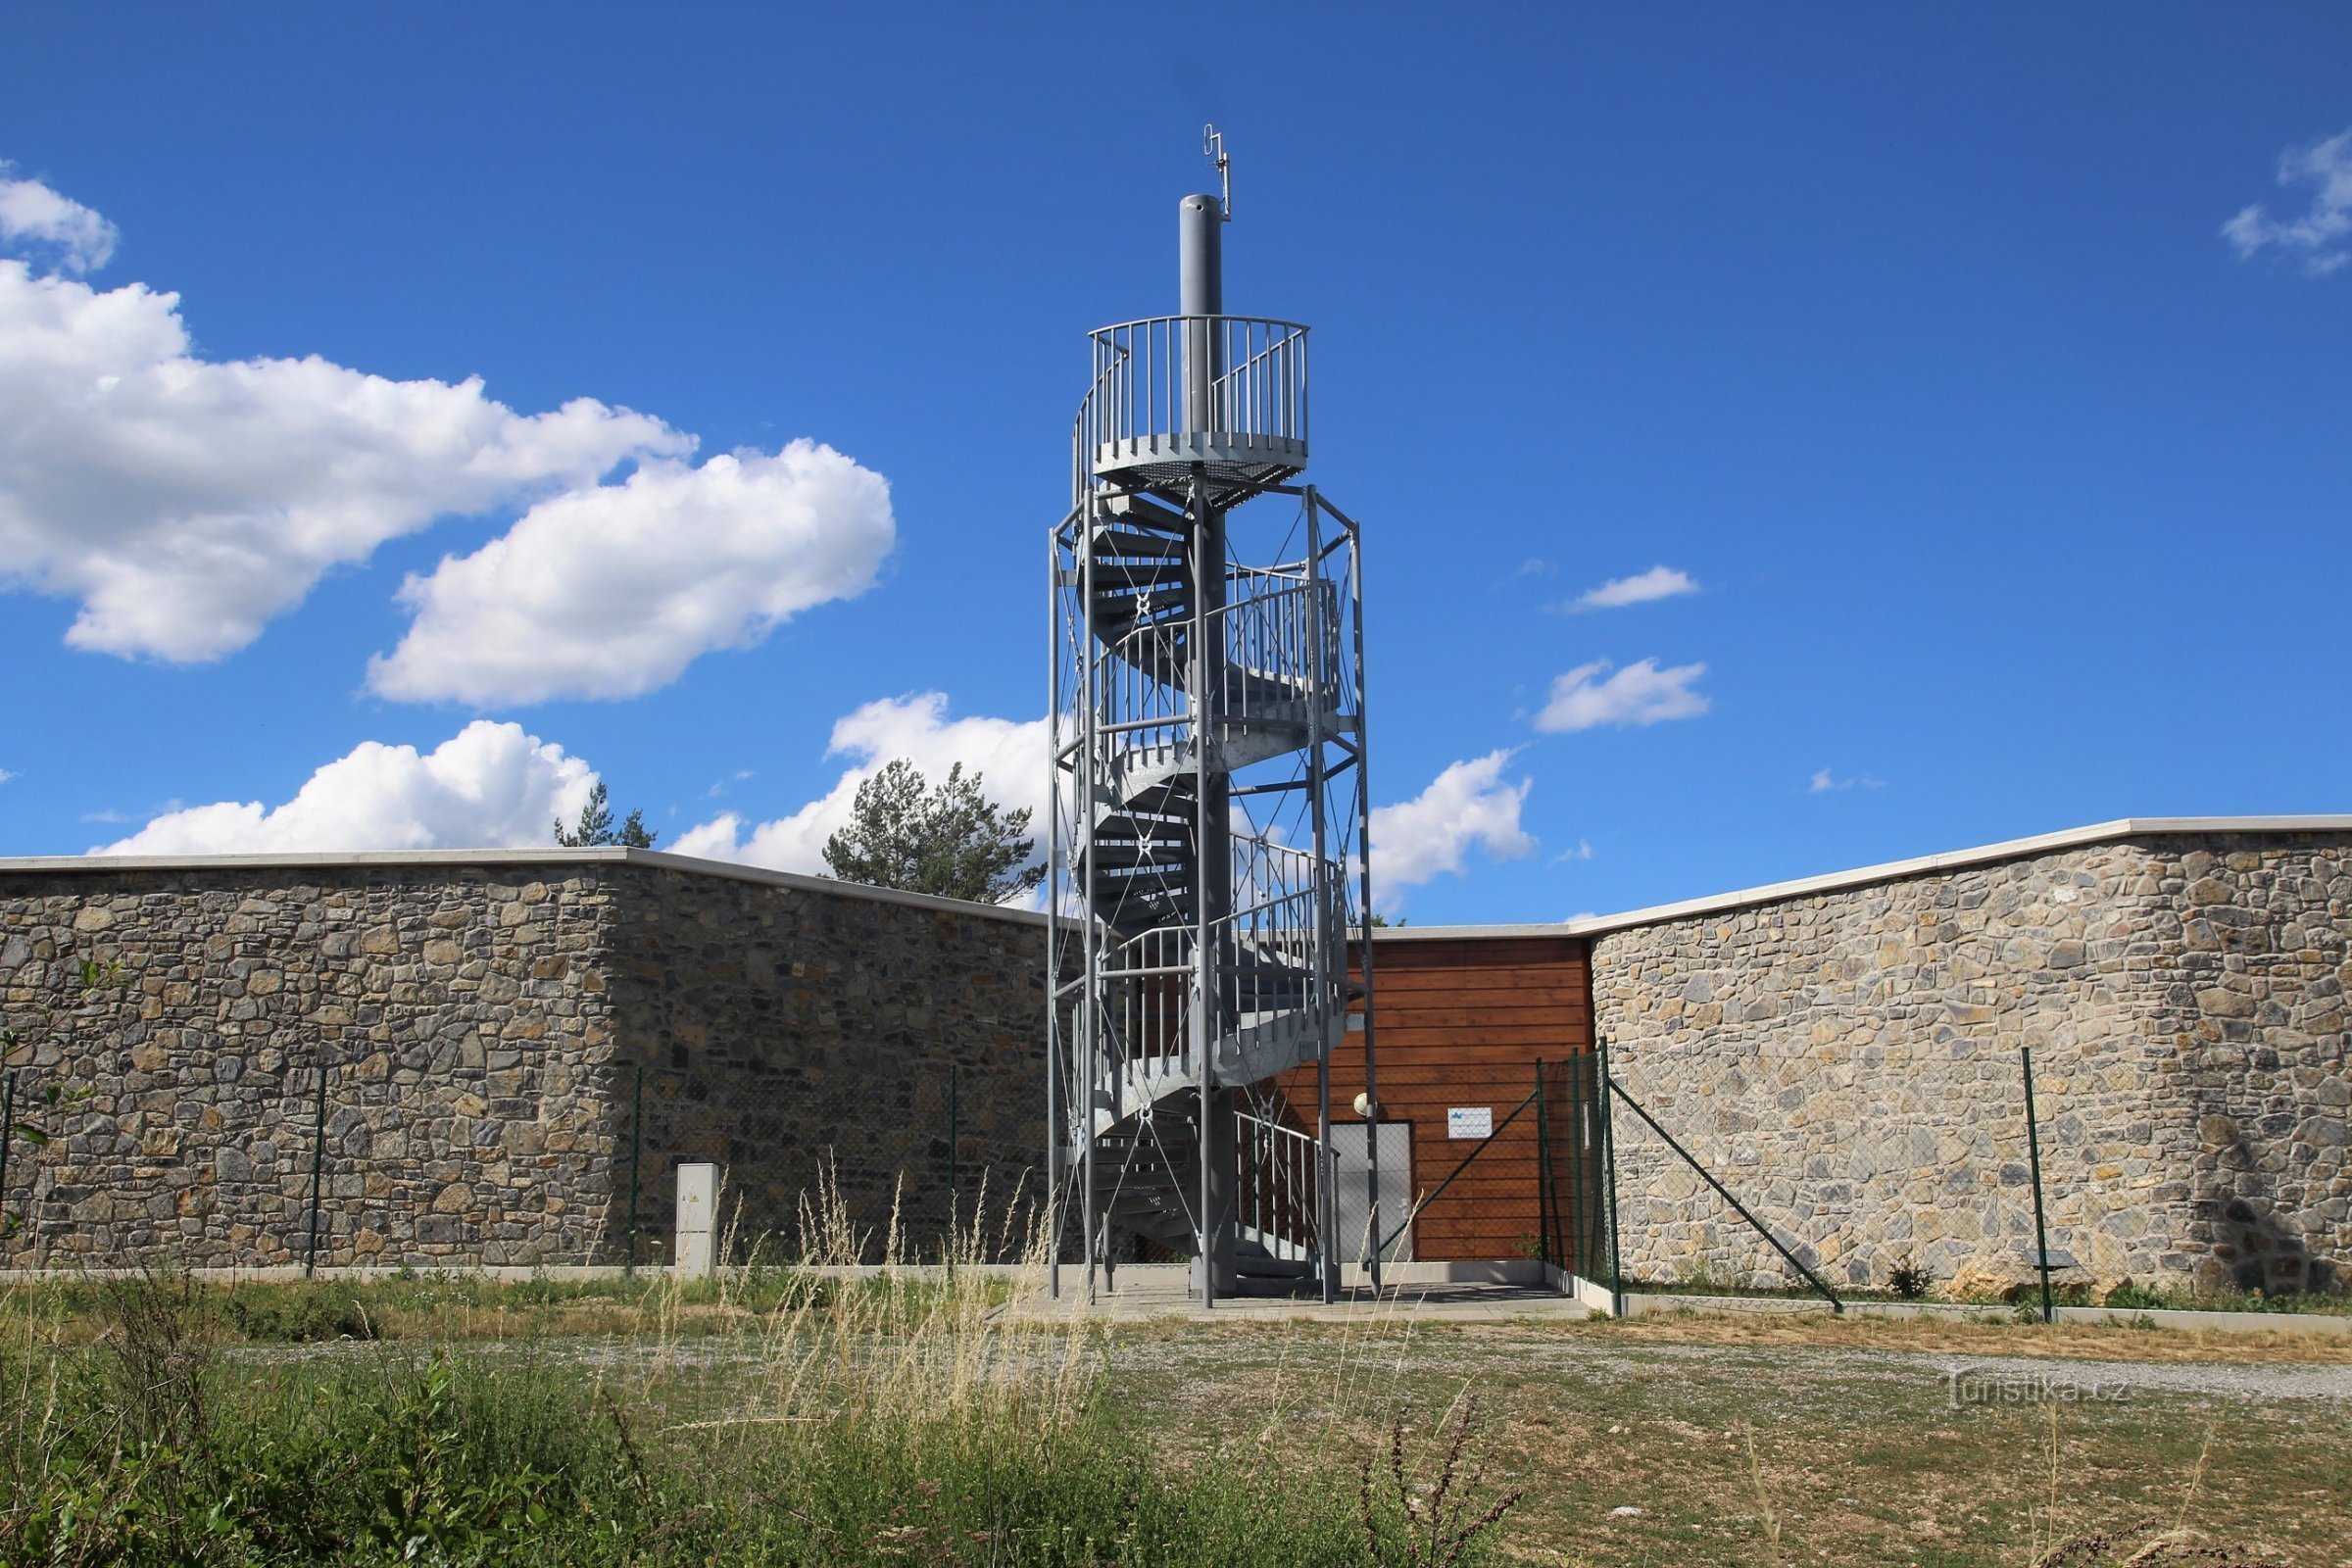 Turnul de observație Mokerská este situat în vârful dealului, deasupra satului, în curtea lacului de acumulare local.